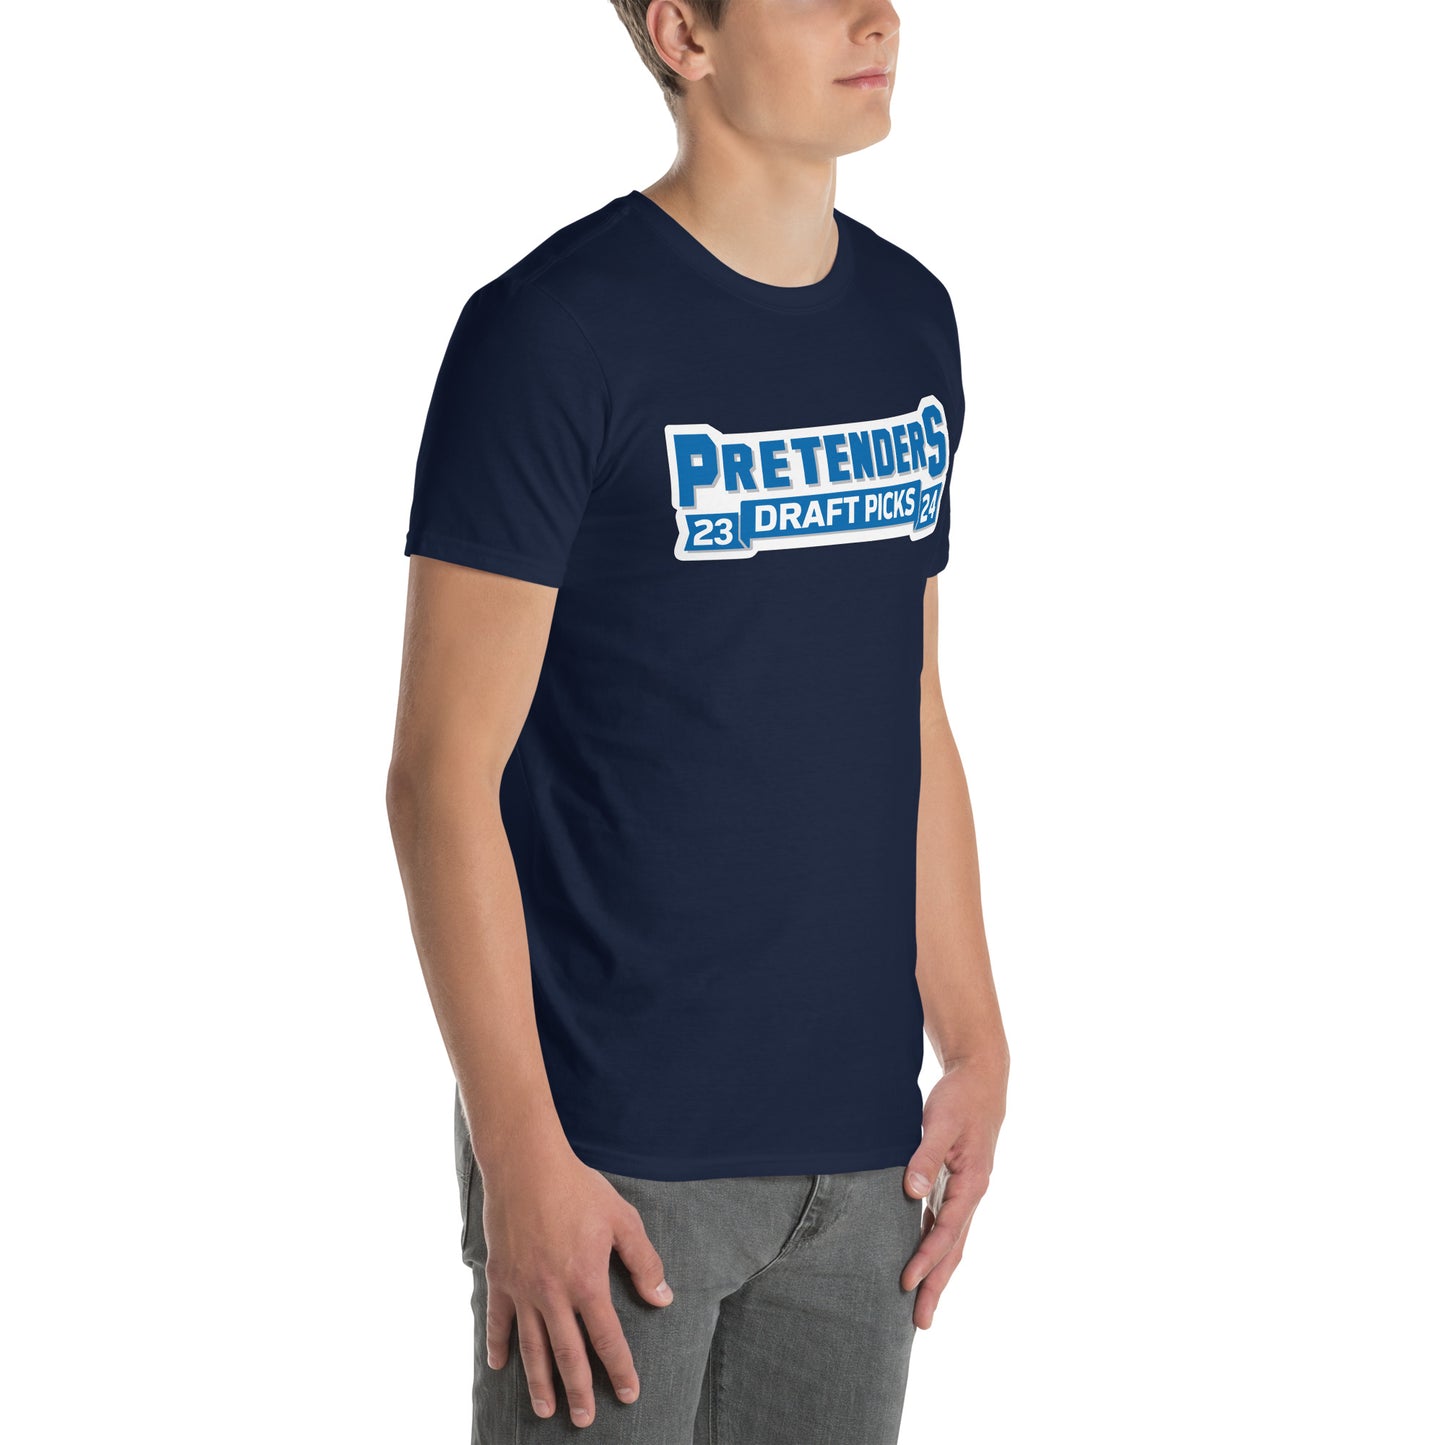 Pretenders Short-Sleeve Unisex T-Shirt